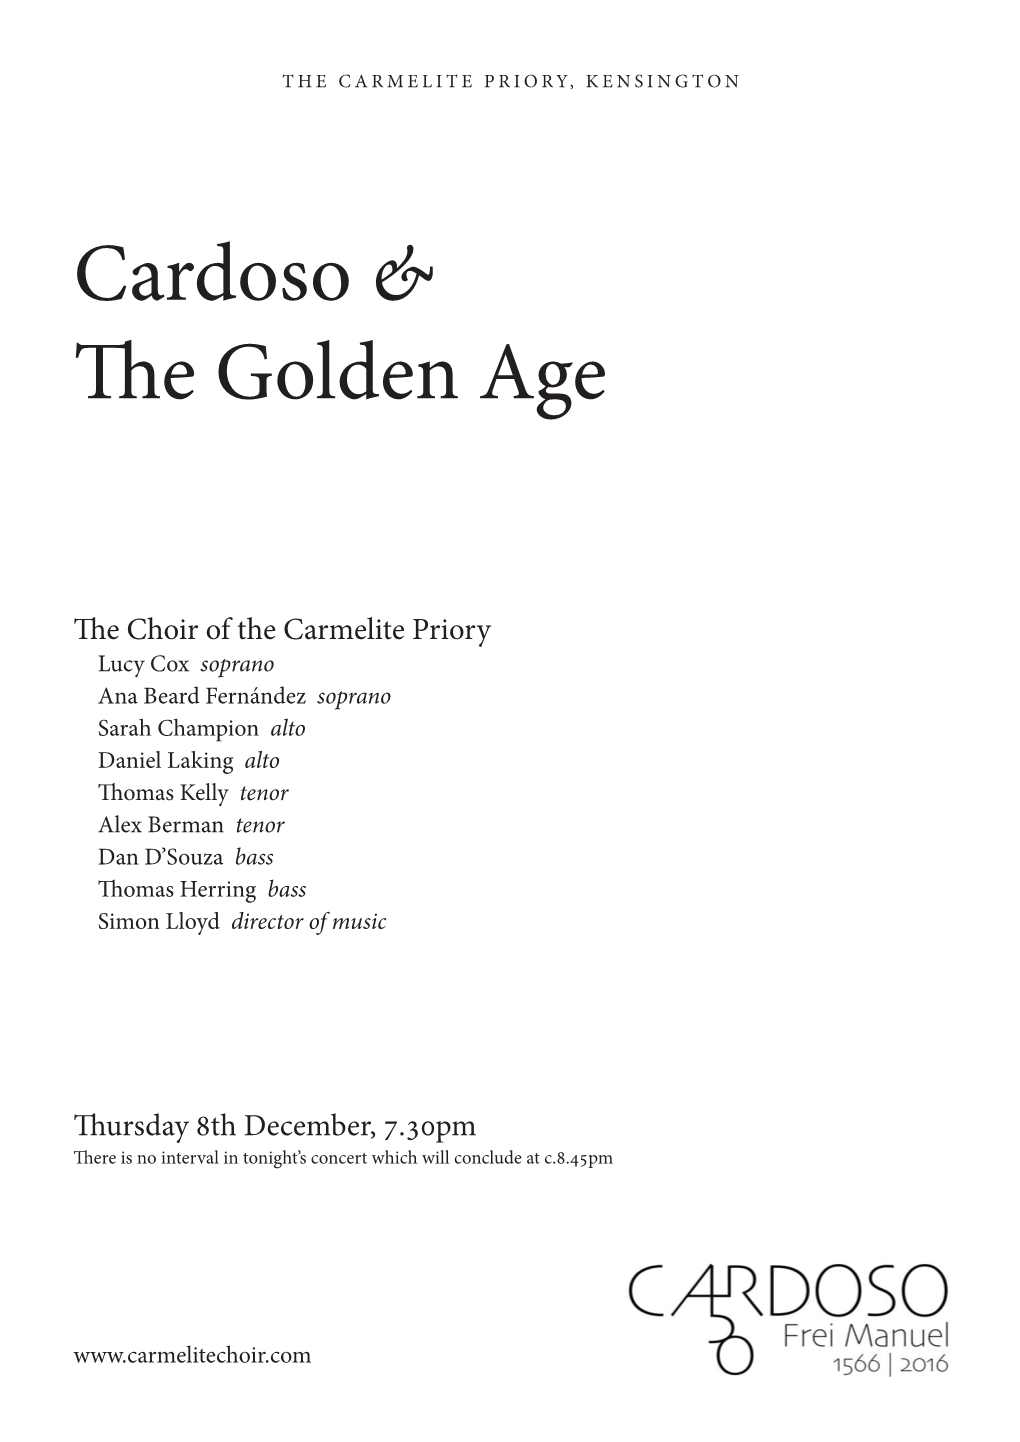 Cardoso & the Golden